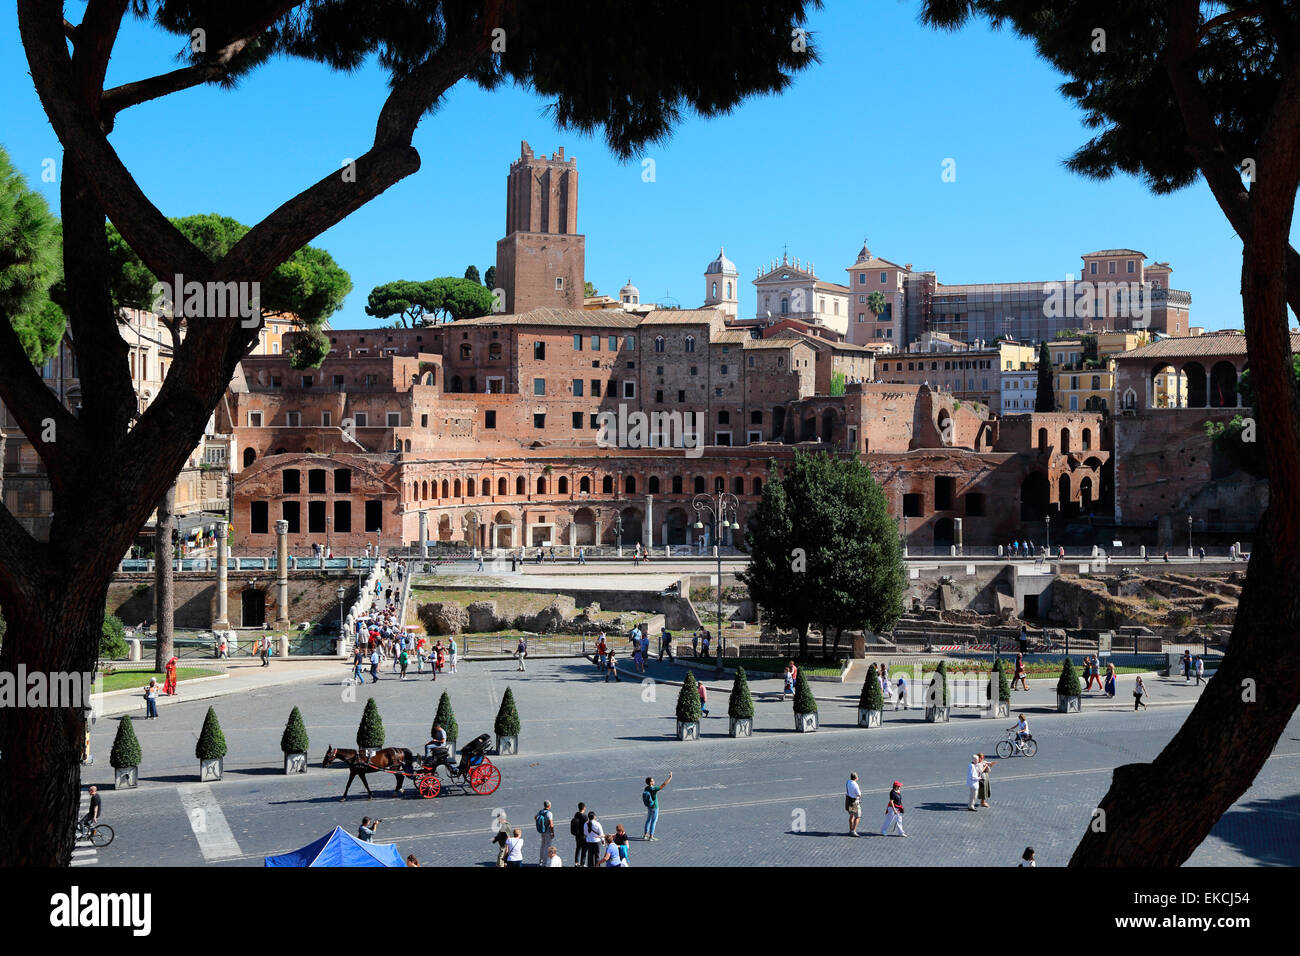 Italy Rome Mercati di Traiano Markets of Trajan Stock Photo